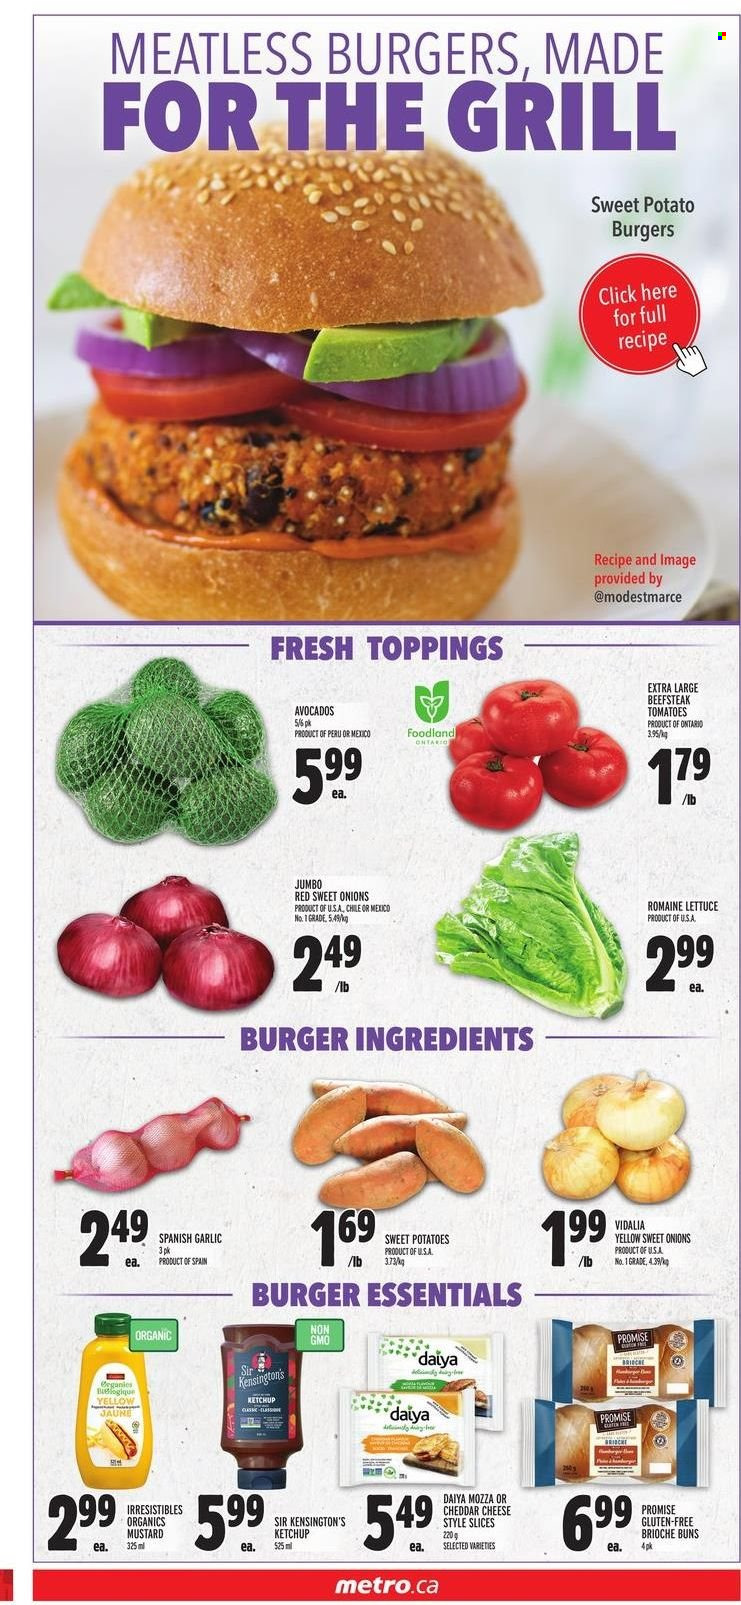 thumbnail - Metro Flyer - May 12, 2022 - May 18, 2022 - Sales products - buns, brioche, garlic, sweet potato, tomatoes, potatoes, avocado, hamburger, cheese, mustard, ketchup. Page 5.